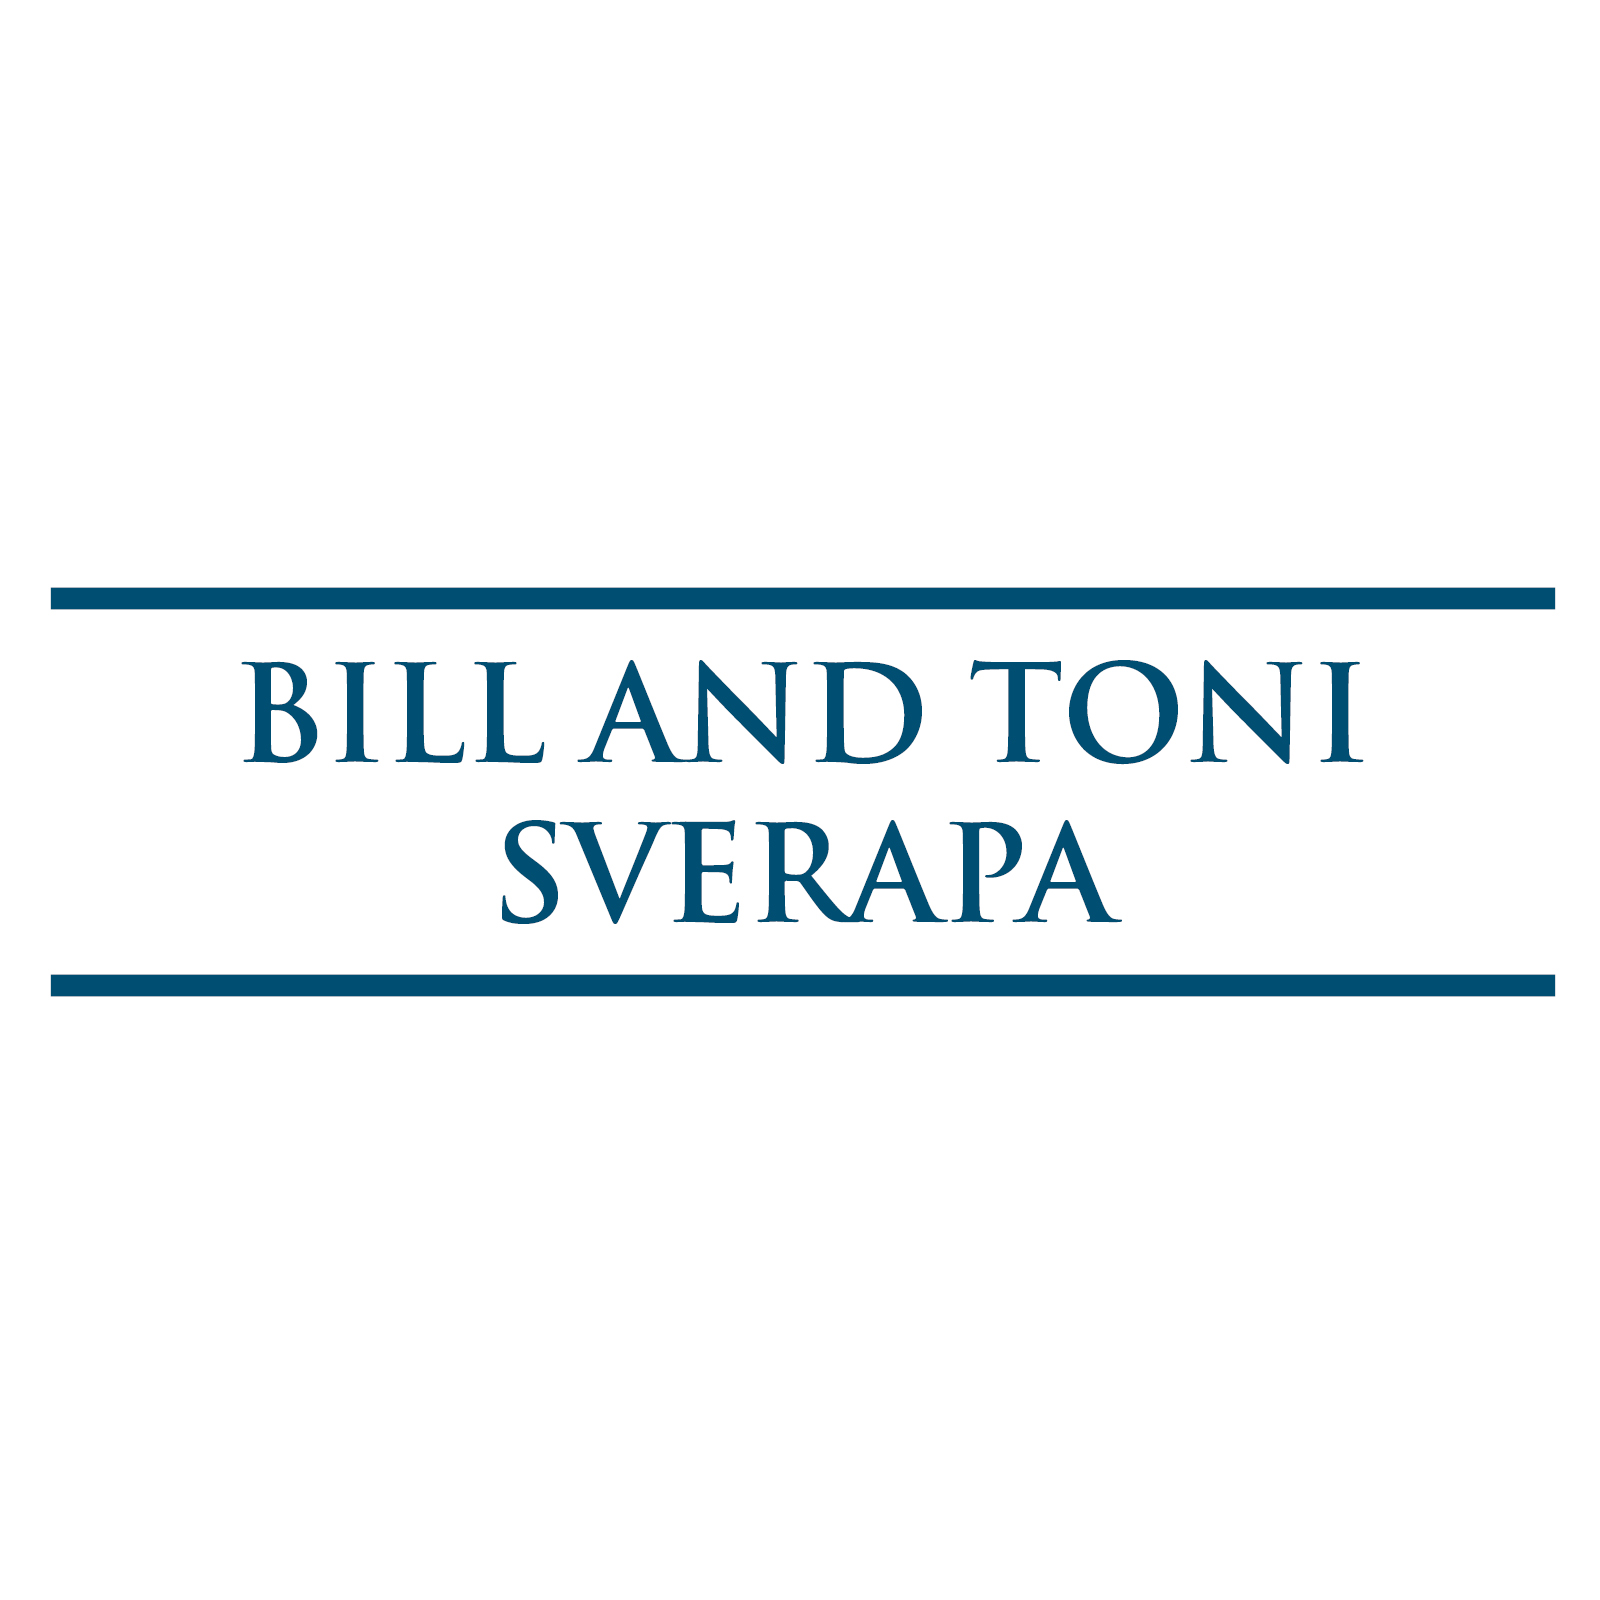 Bill and Toni Sverapa 